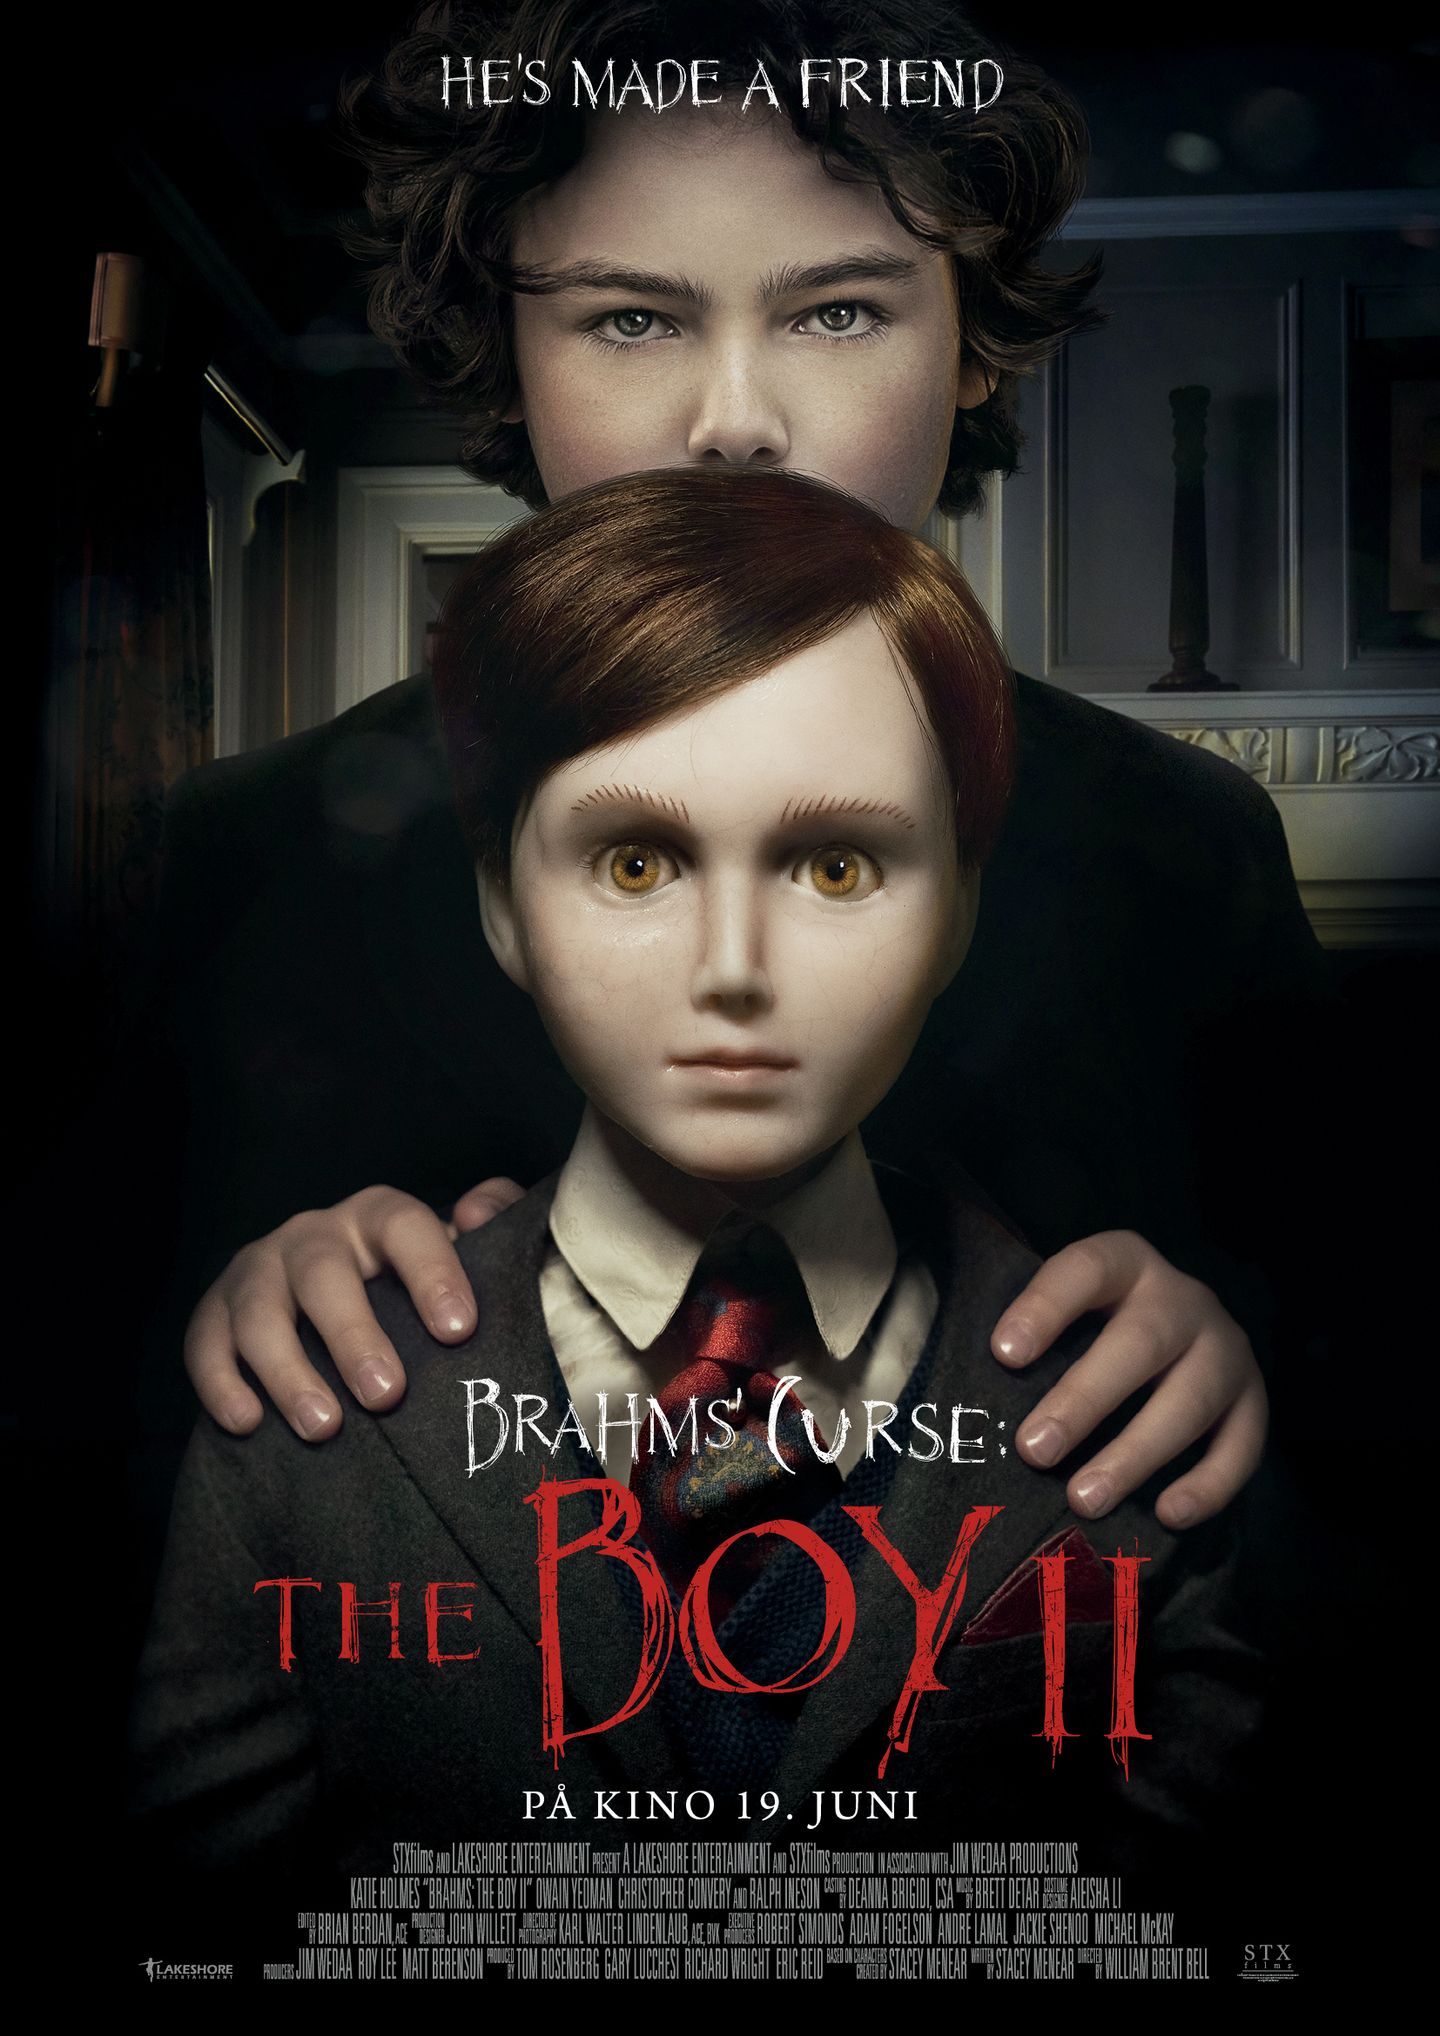 Plakat for 'Brahms' Curse: The Boy 2'